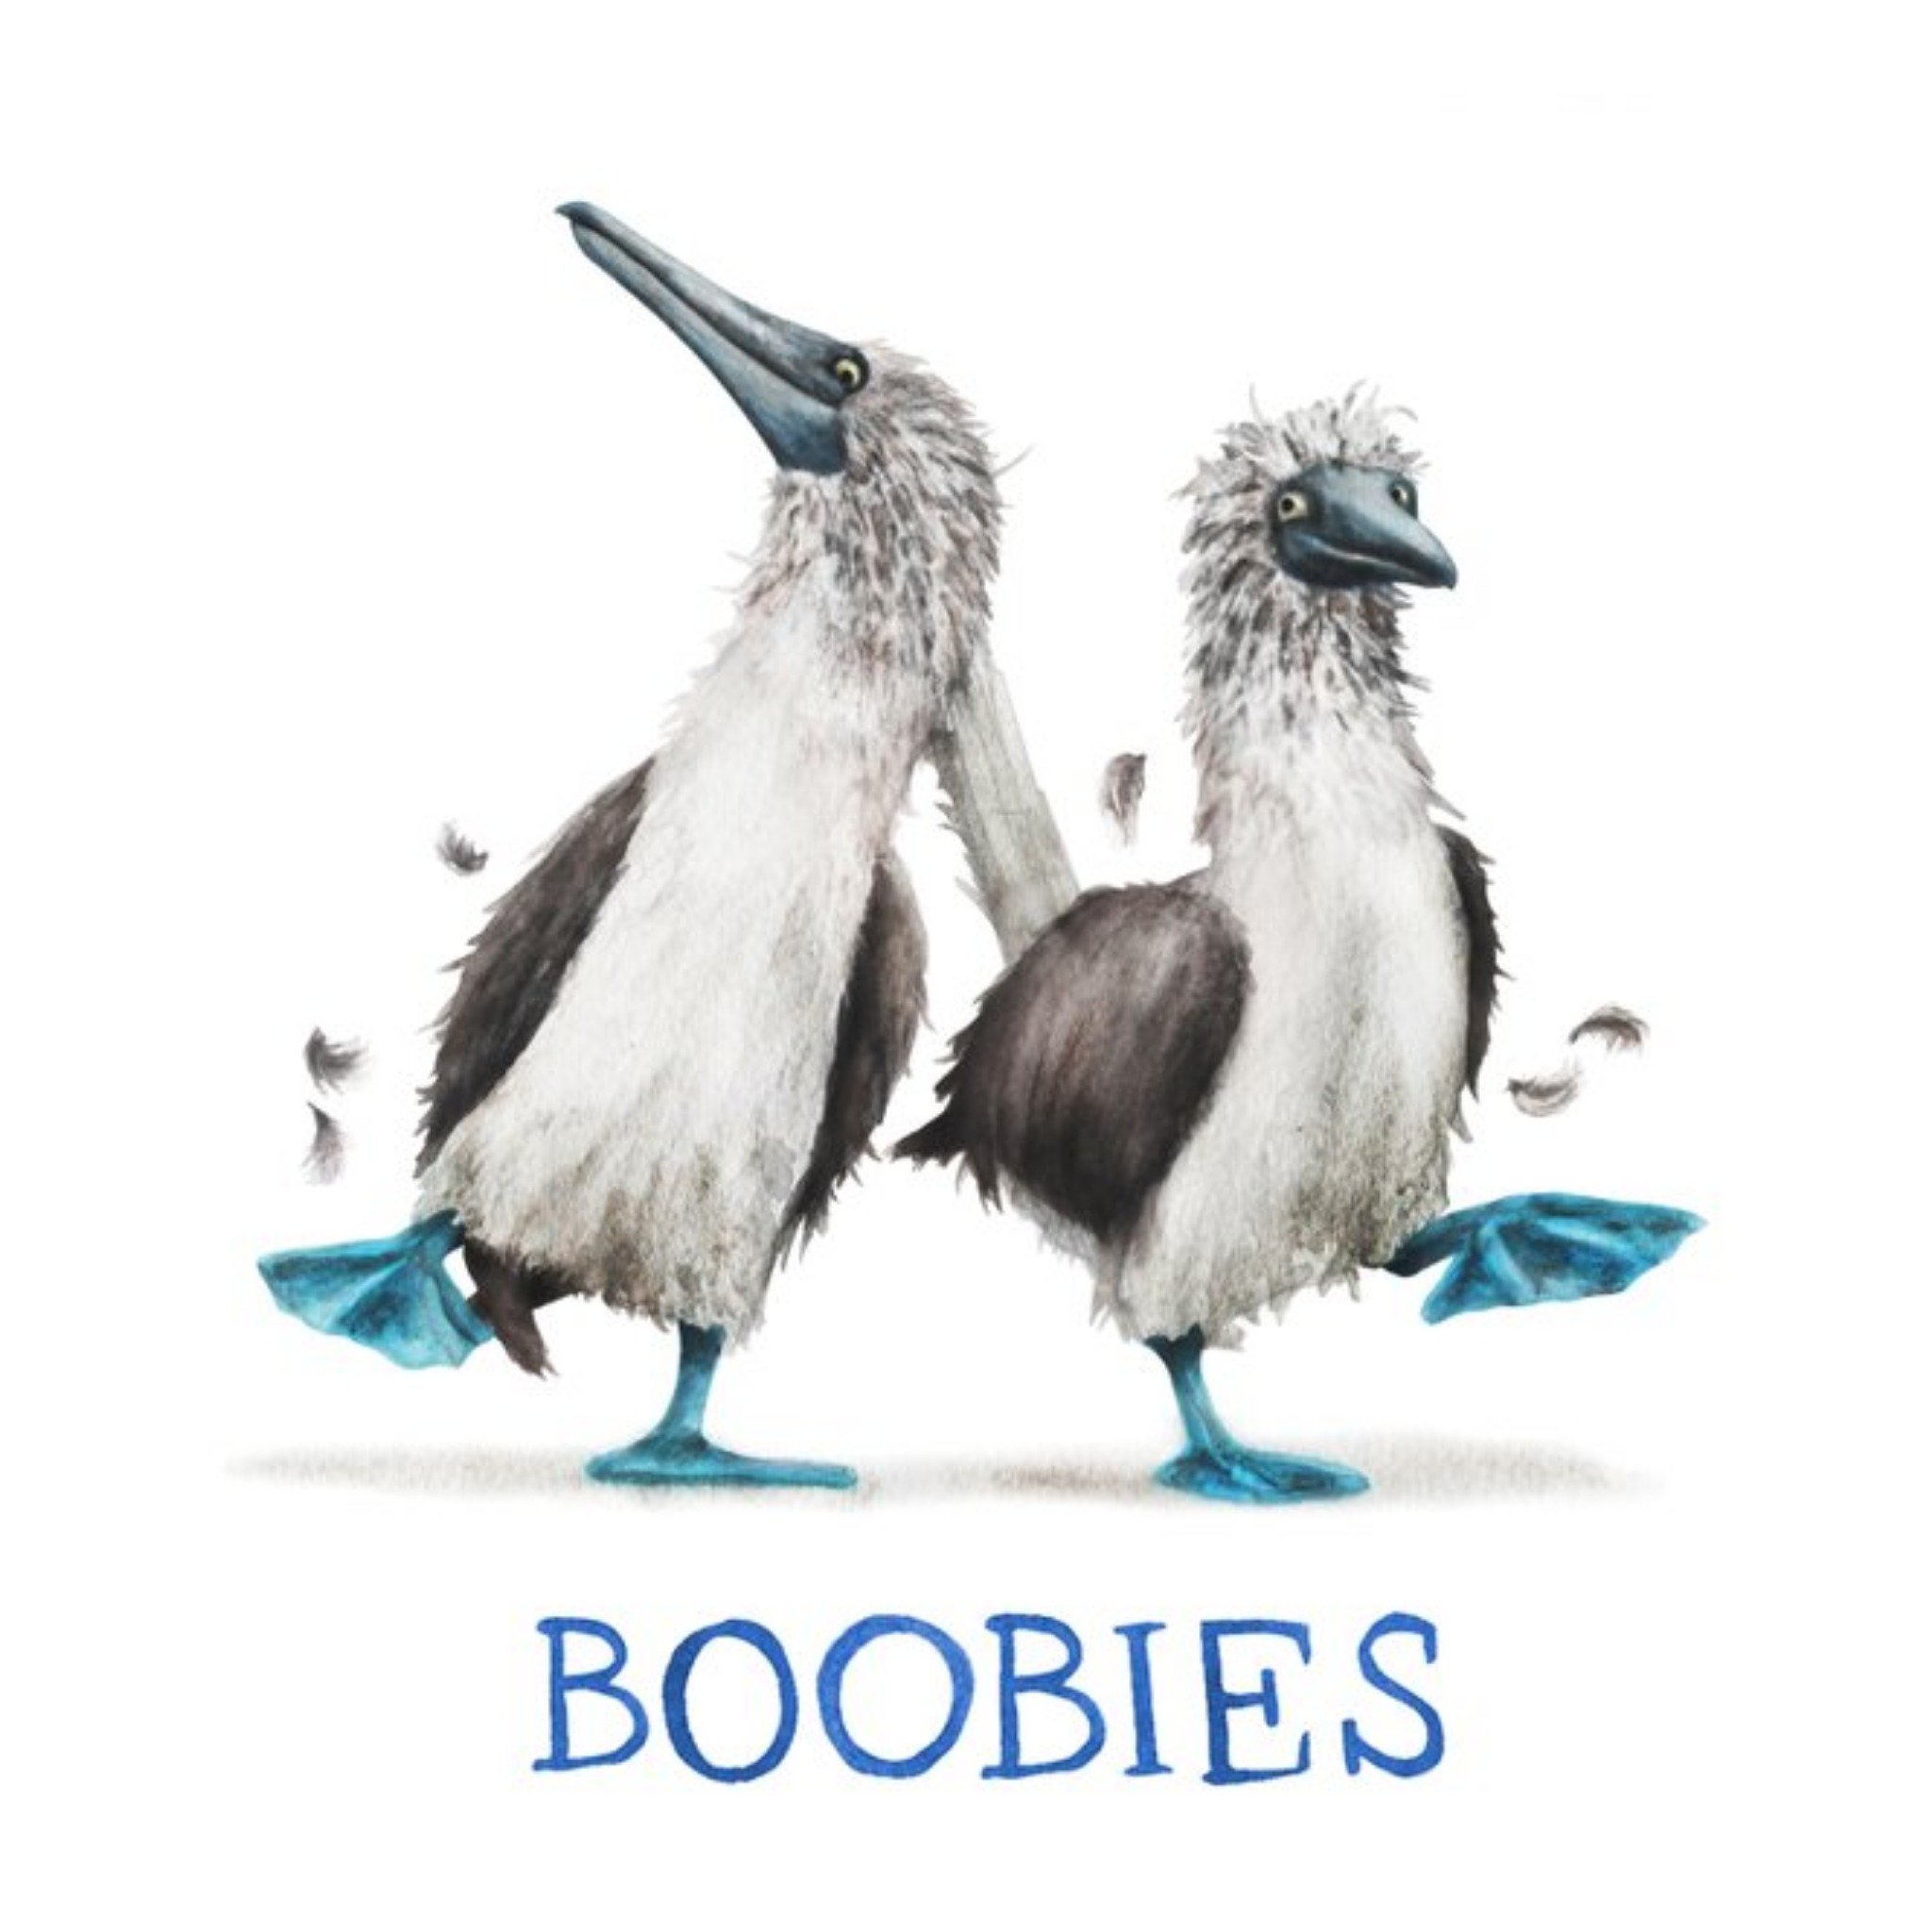 Moonpig Birds Boobies Card, Square